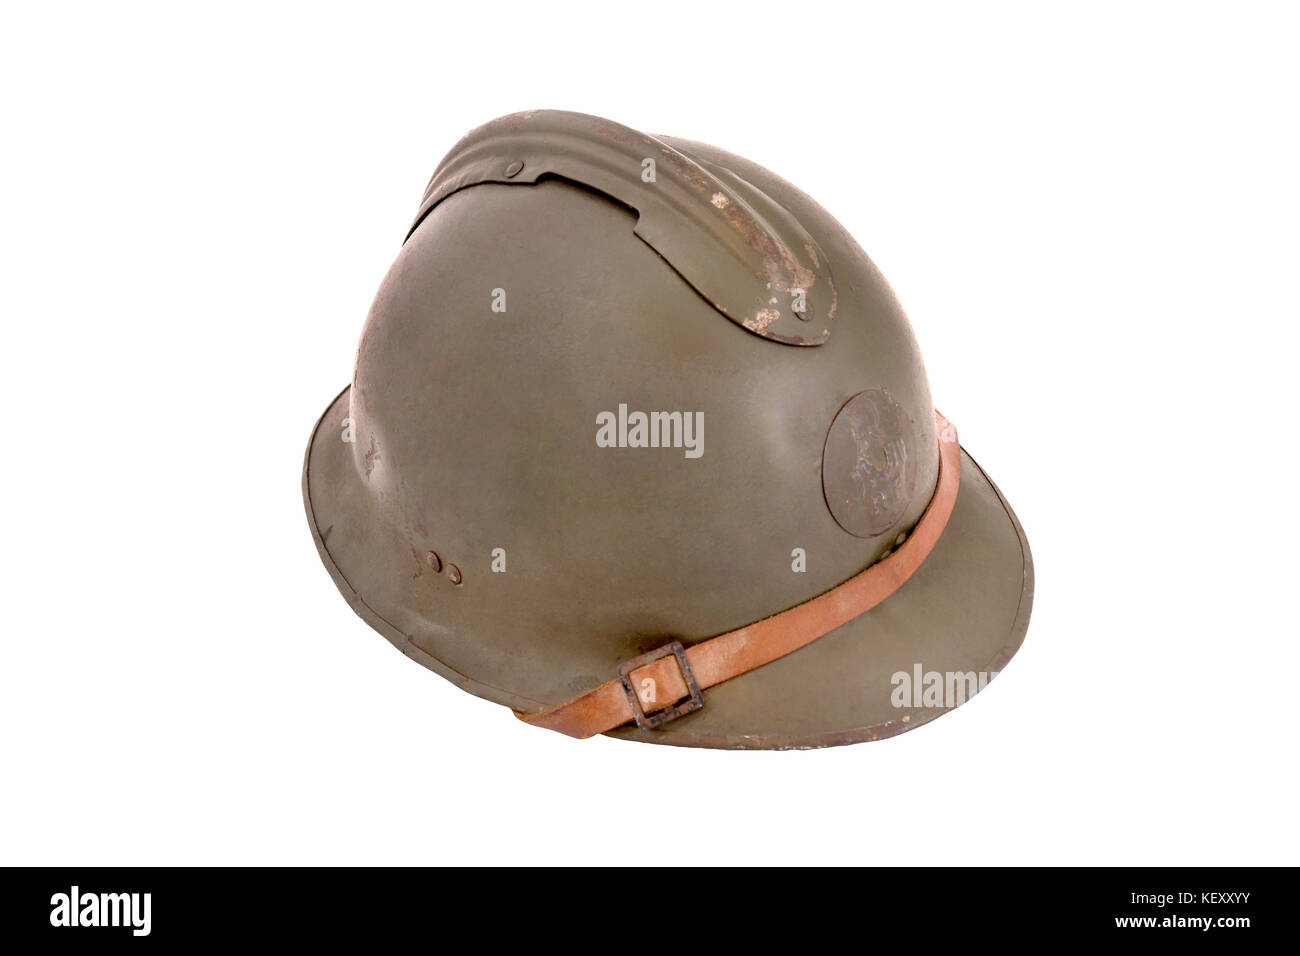 Frankreich im Zweiten Weltkrieg französische Kampf Helm. (M-26) (1926).  französischer Standard Schlacht Helm während des Zweiten Welt zwei (so  genannte Adrian Helm). Emblem auf Stockfotografie - Alamy